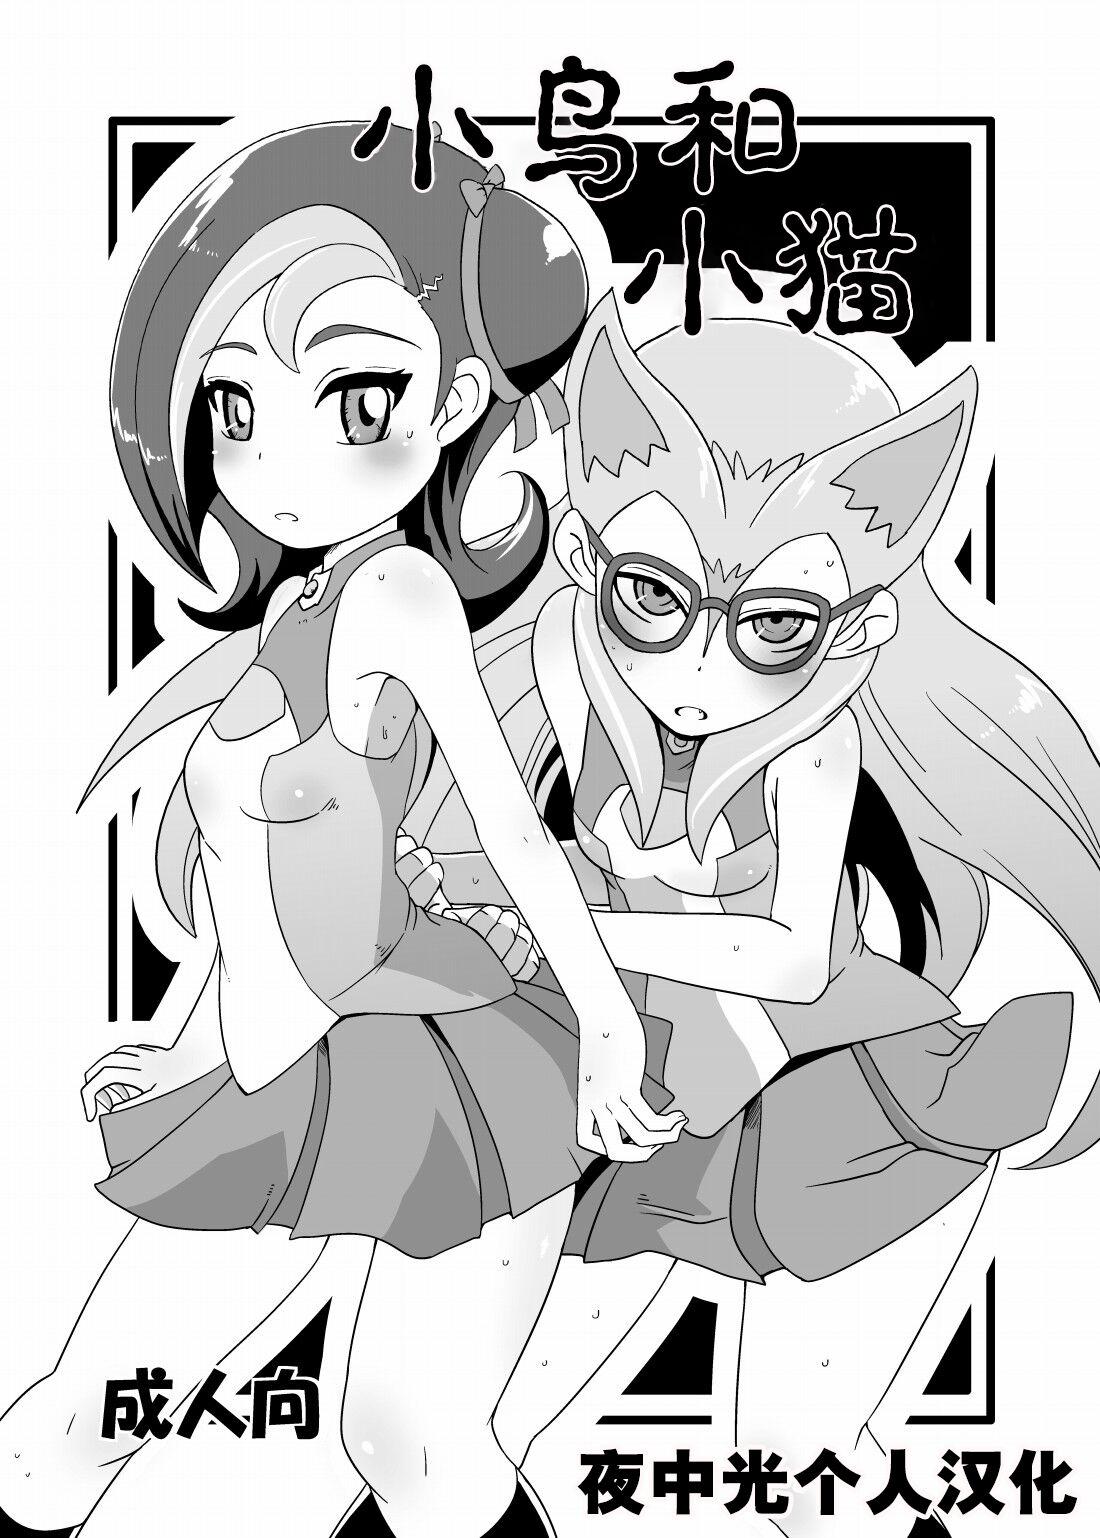 Grandma Kotori to Koneko 小鸟和小猫 - Yu gi oh zexal Futanari - Picture 1